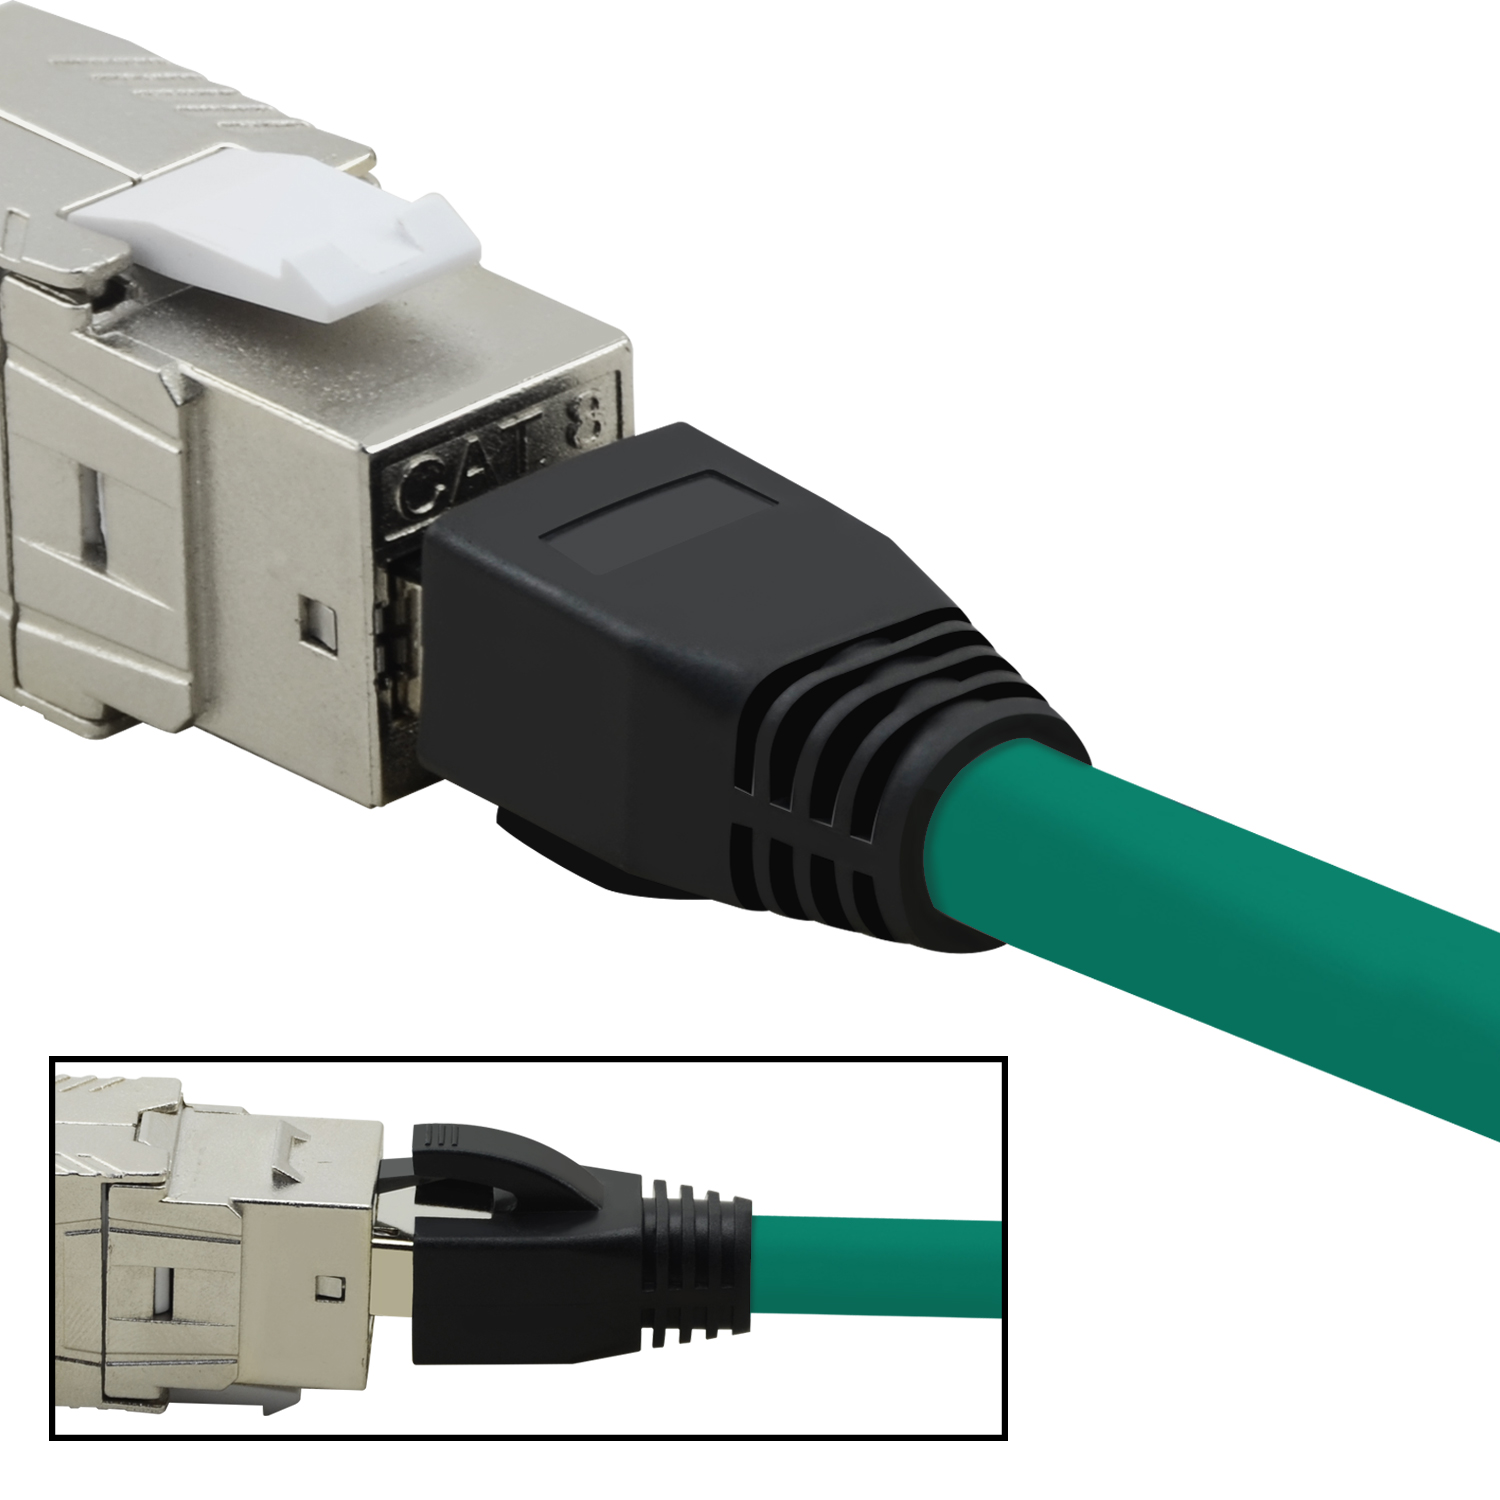 TPFNET 0,25m Patchkabel m S/FTP GBit, 0,25 40 Netzwerkkabel, grün, Netzwerkkabel 